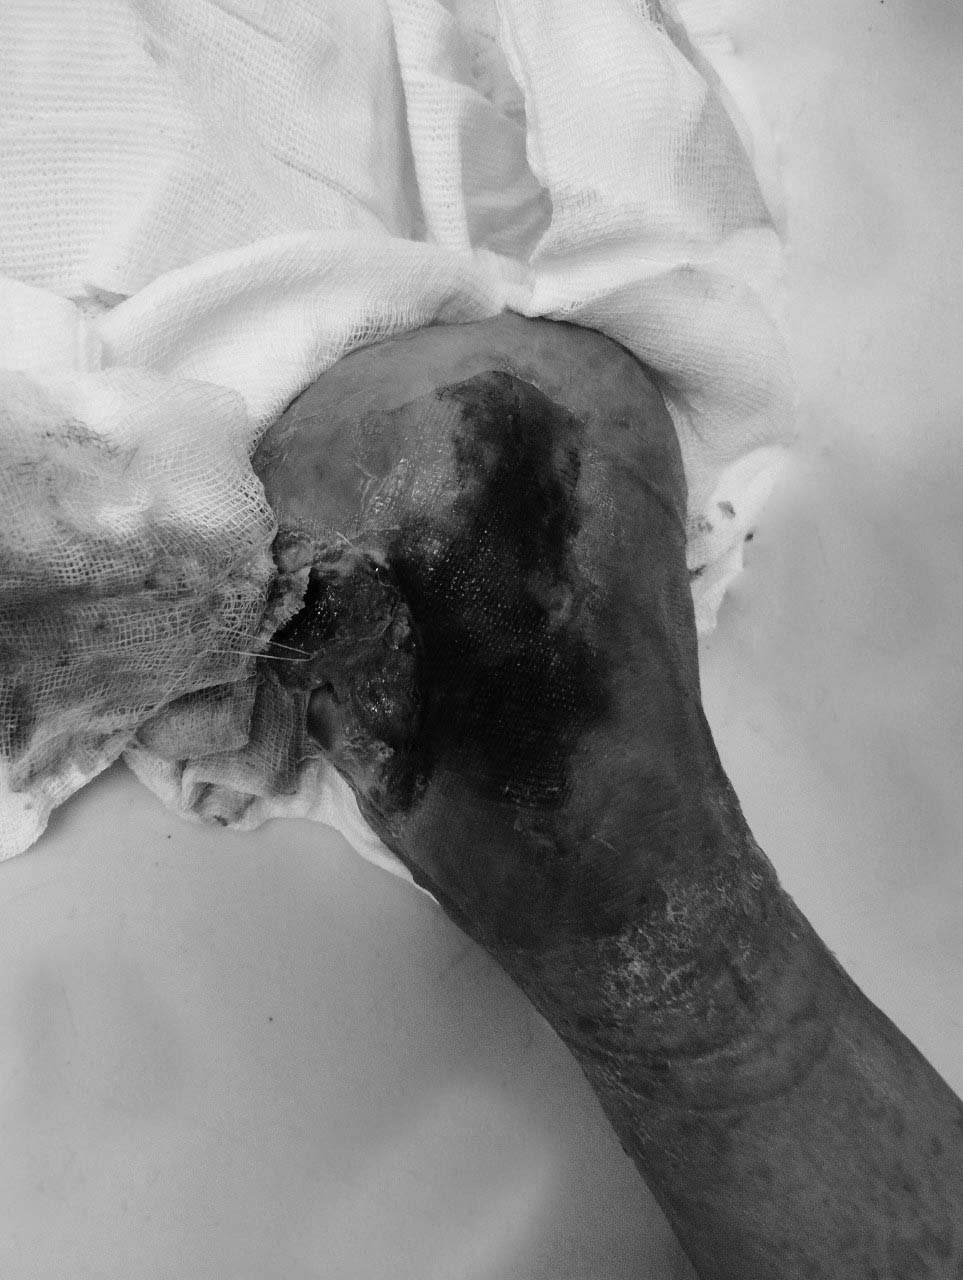 Hình ảnh chân người bệnh khi đến bệnh viện mỏm cụt chân trái vẫn tiếp tục hoại tử